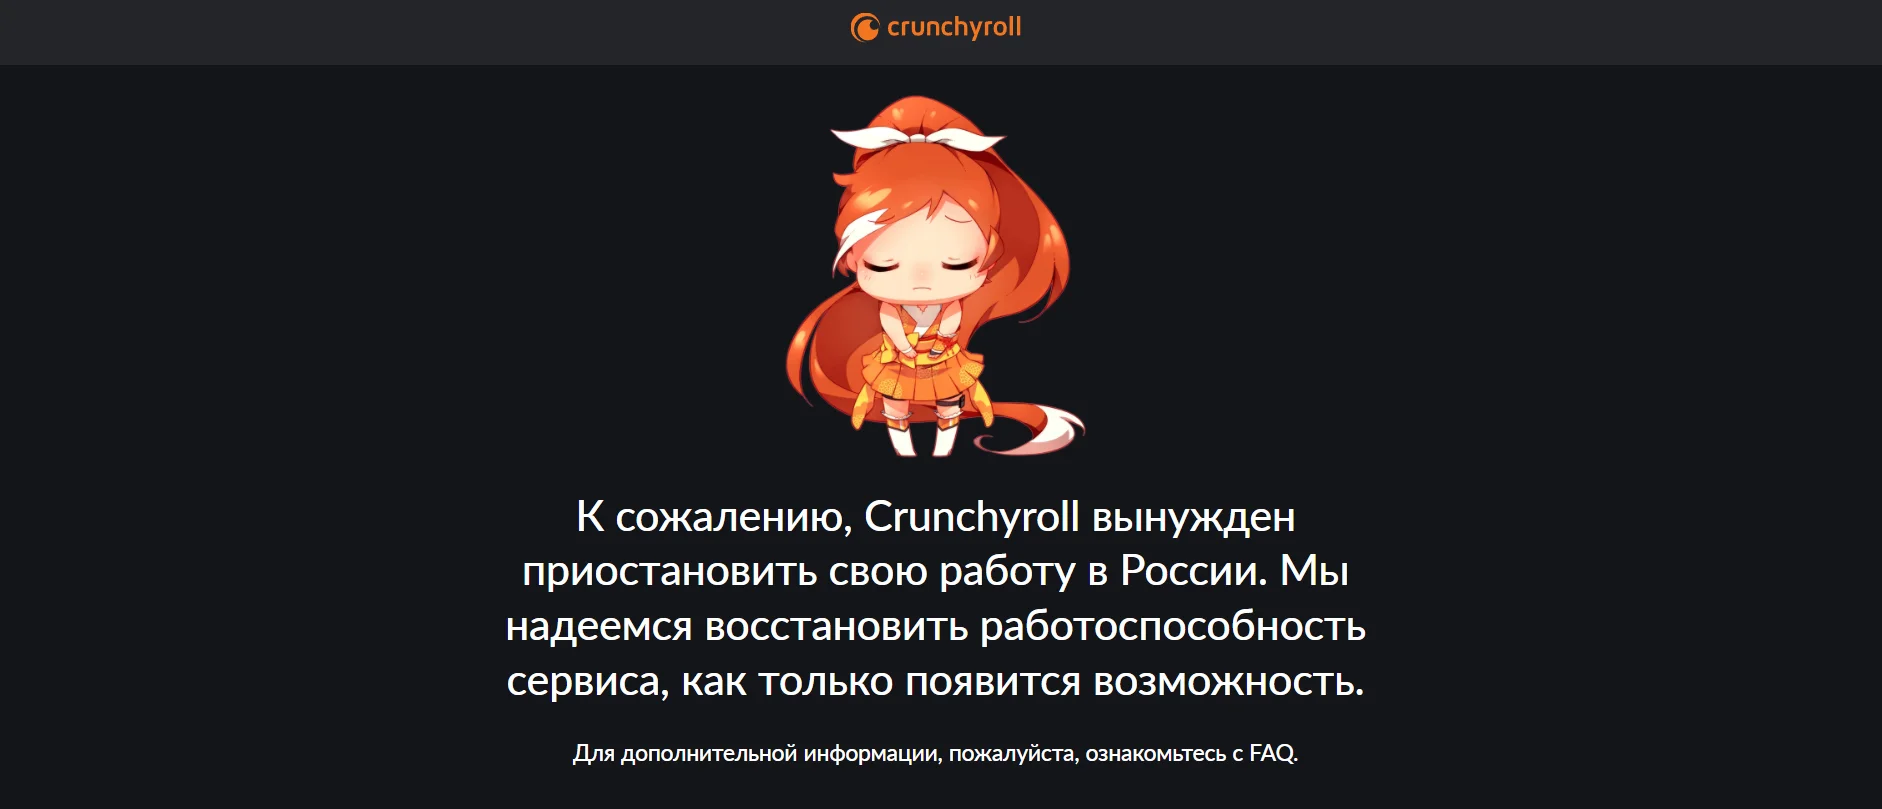 Crunchyroll временно прекратил свою работу в России - фото 1